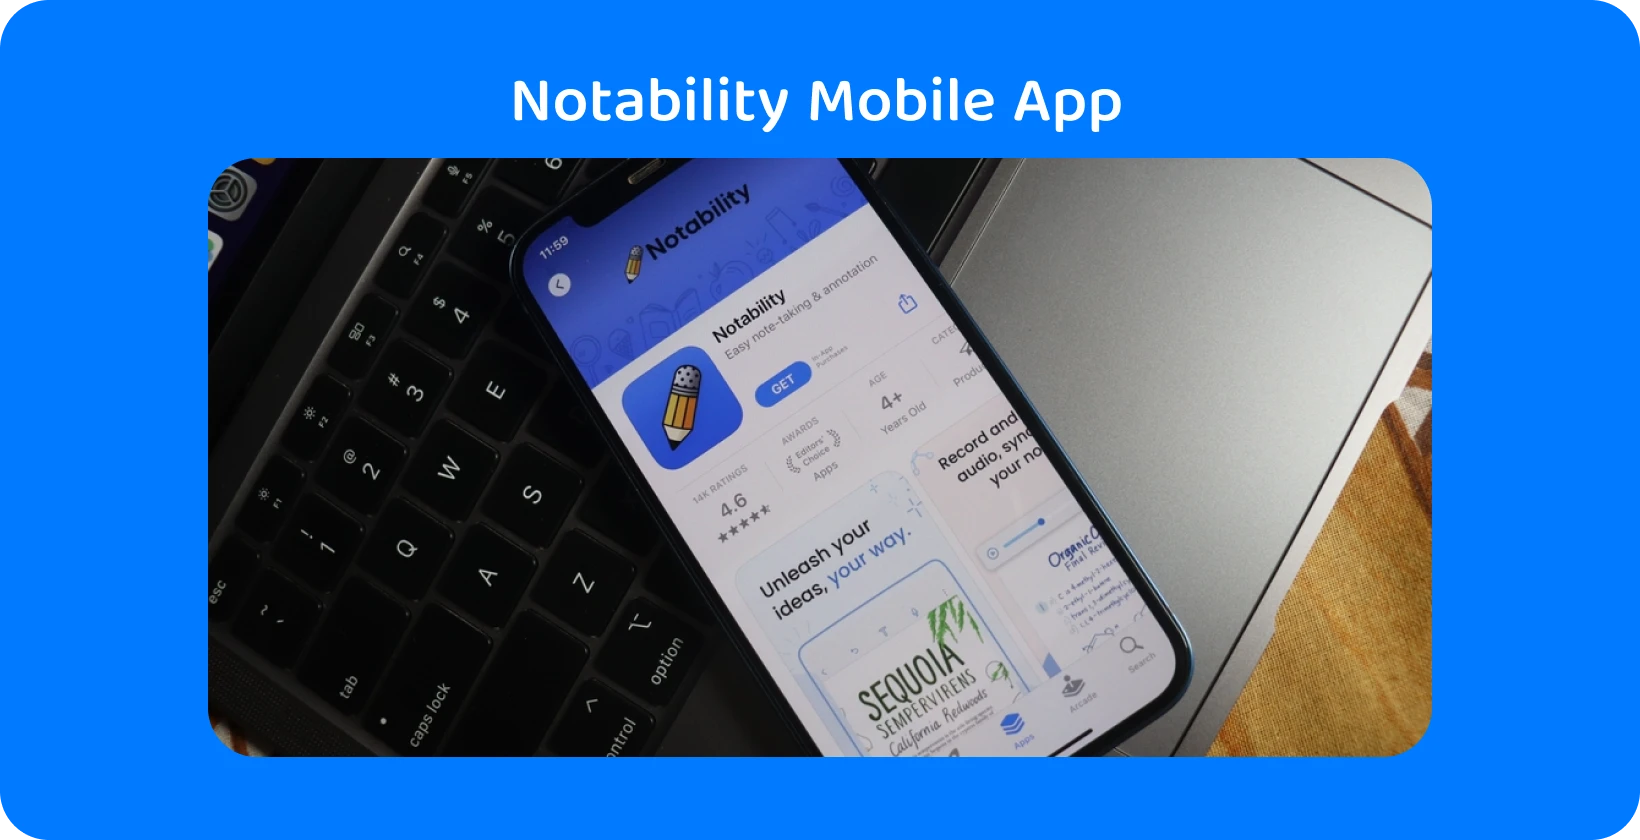 Aplikacja Notability na ekranie smartfona z funkcją transkrypcji, prezentująca możliwości zamiany dźwięku na tekst.